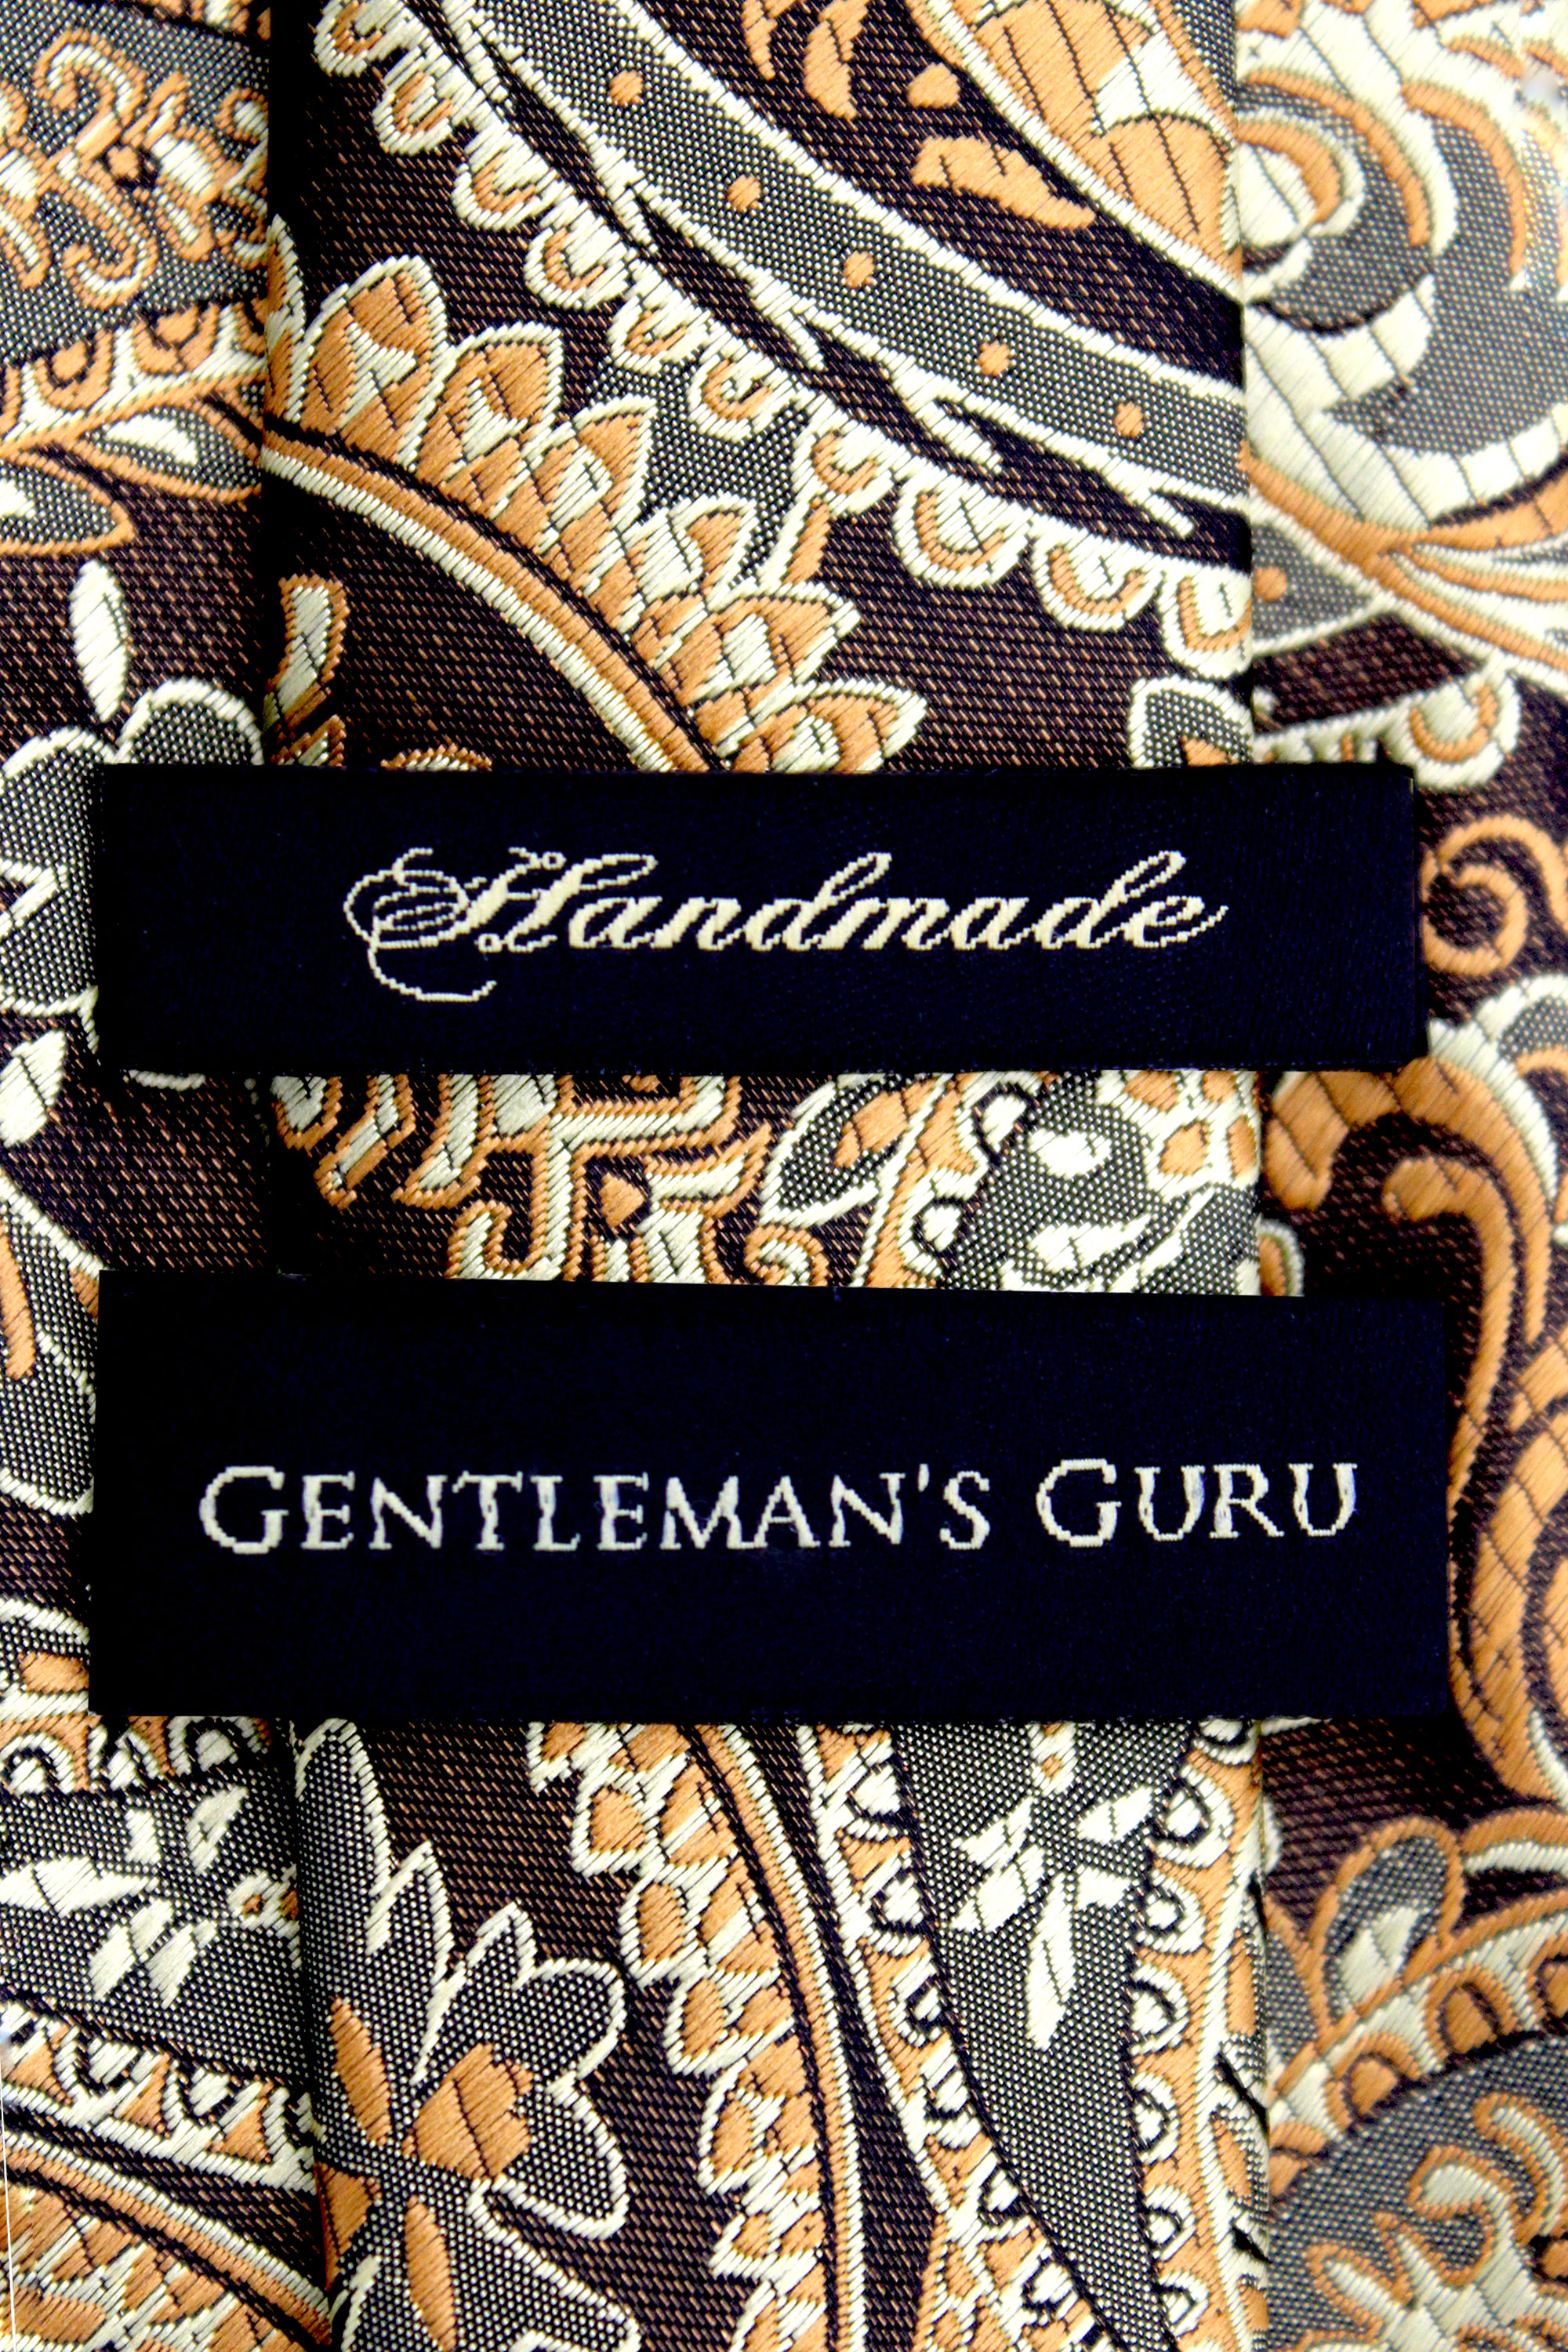 Gold-Paisley-Necktie-from-Gentlemansguru.com